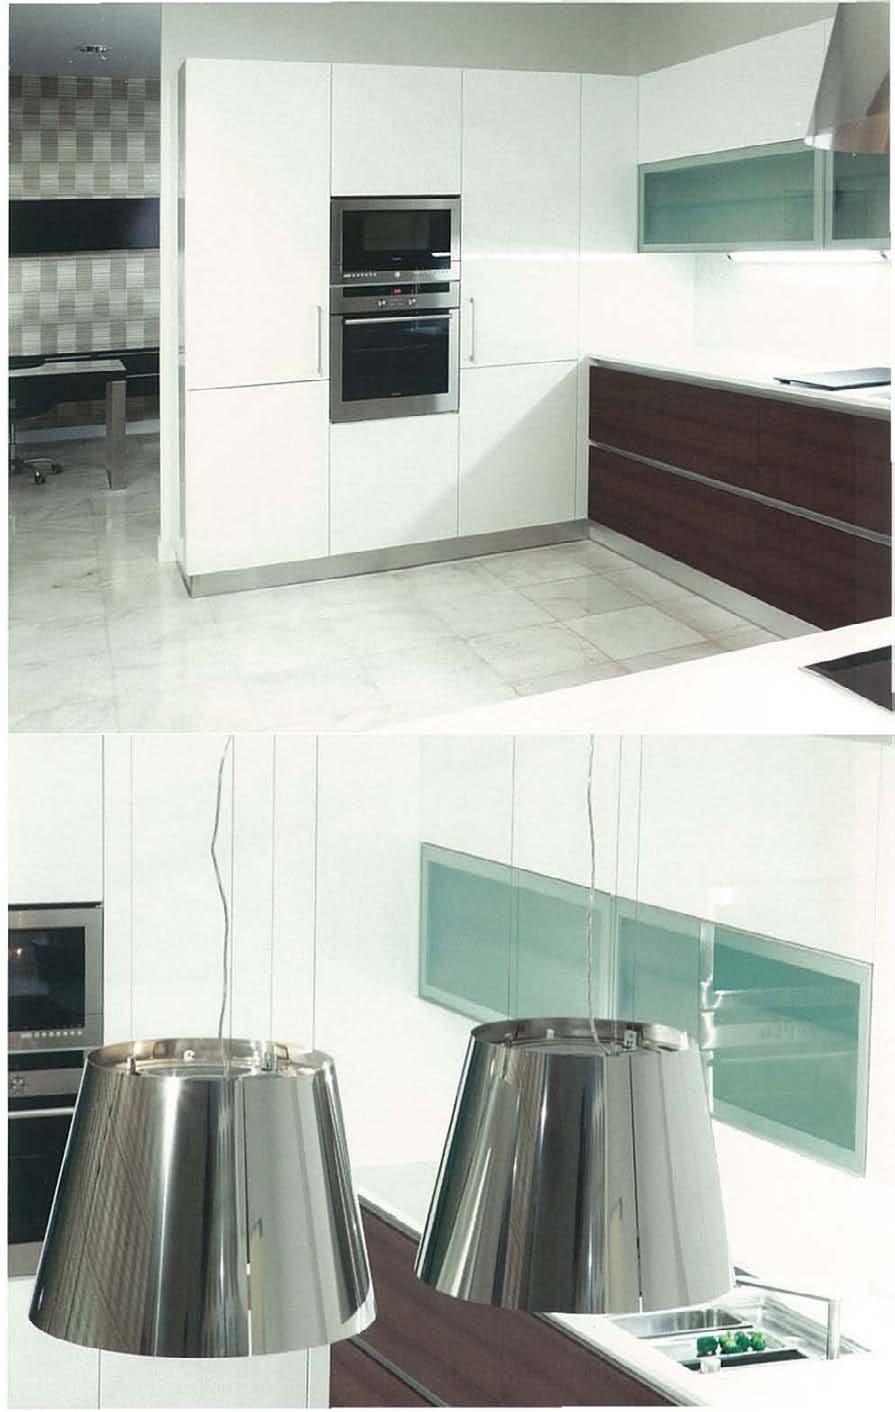 PROGRAMA 310 BRILHANTE 'Volumes compactos, definem um ambiente de cozinha racional e de grande atracção' Portas em polilaminado